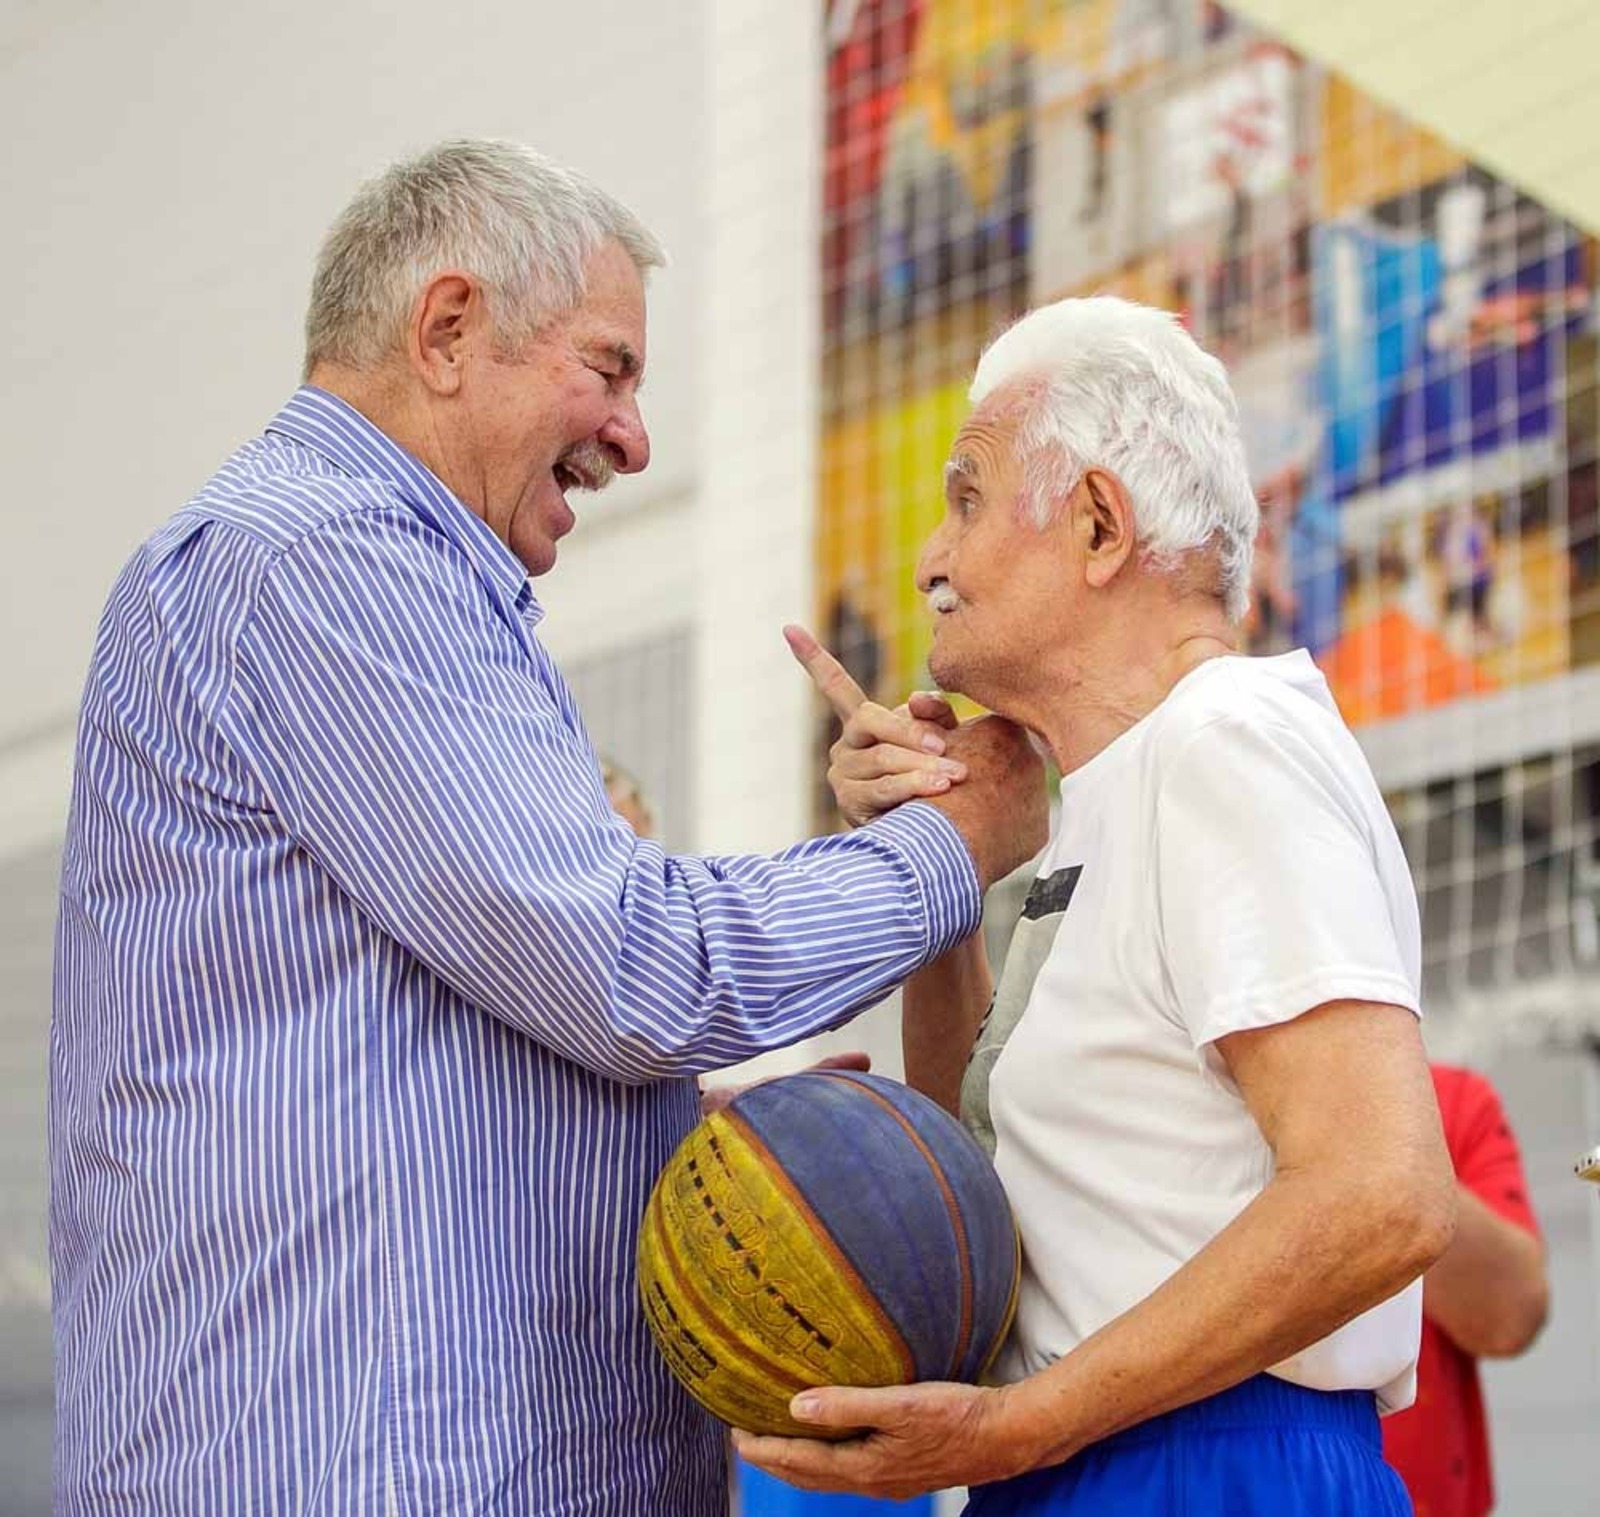 из архива Амира Валитова Ветеран башкирского баскетбола Амир Валитов с мячом, врученным ему Иваном Едешко.